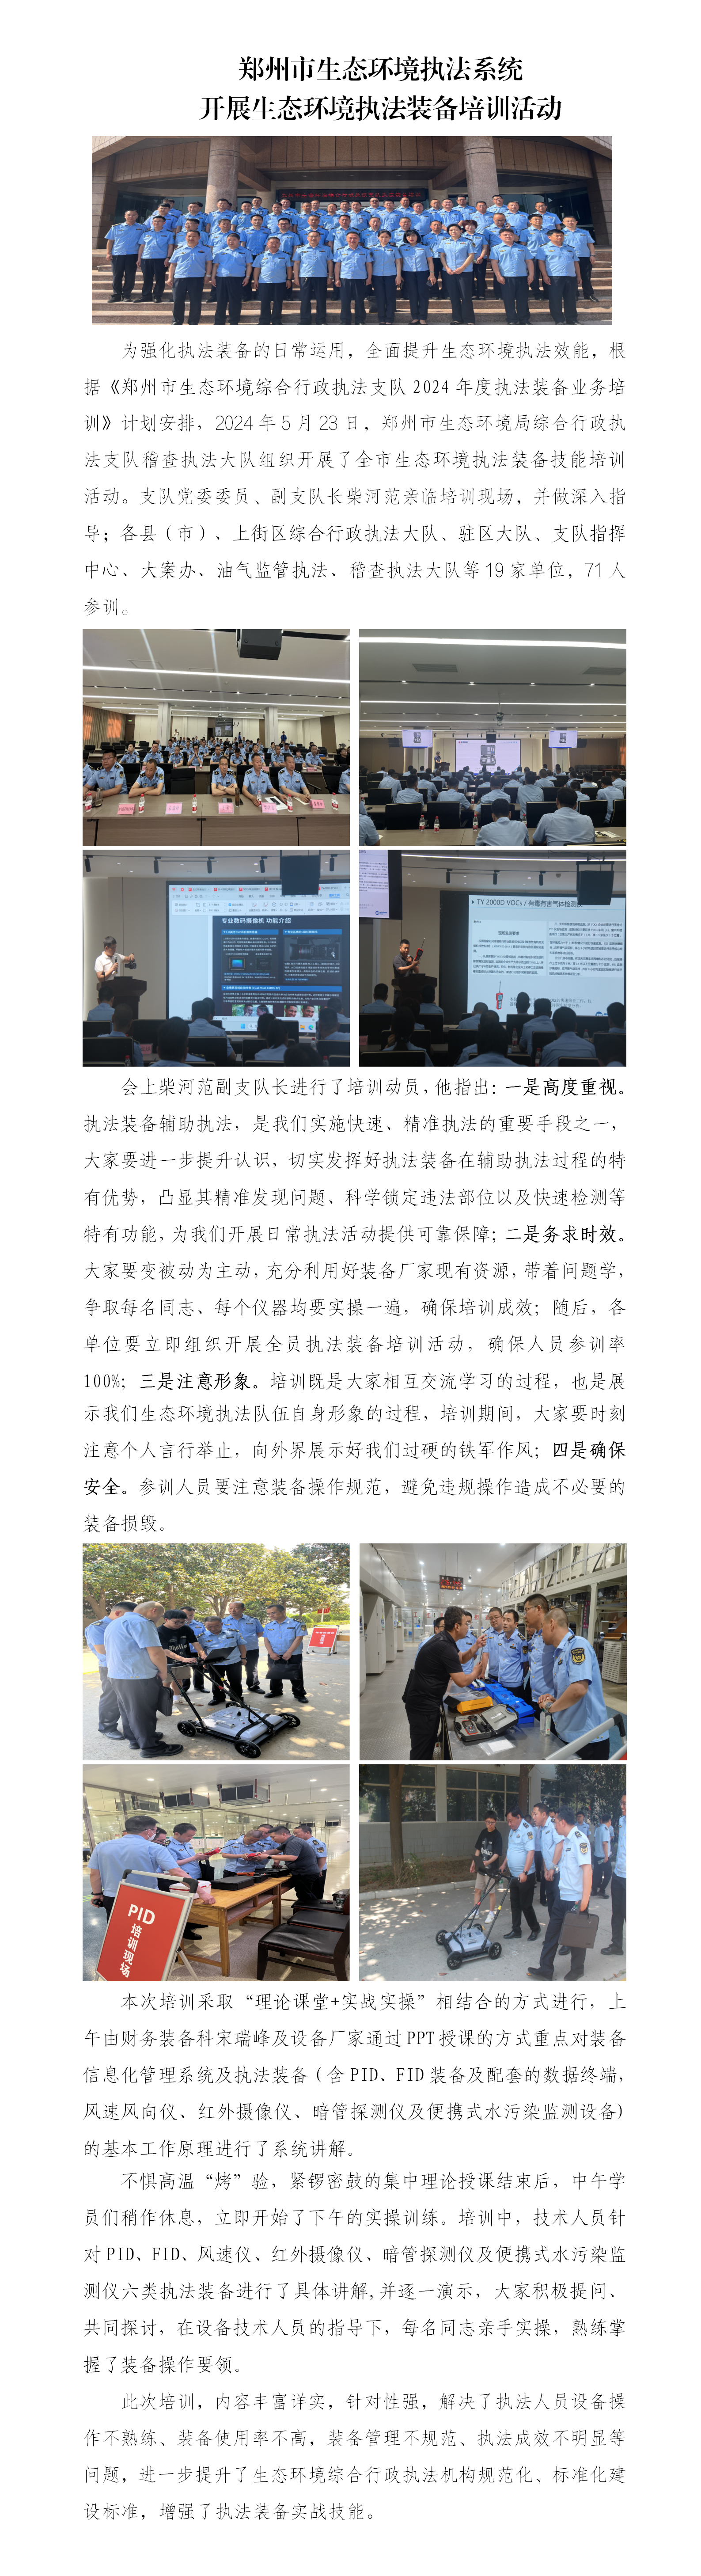 第14期 郑州市生态环境执法系统开展生态环境执法装备培训活动_01.png